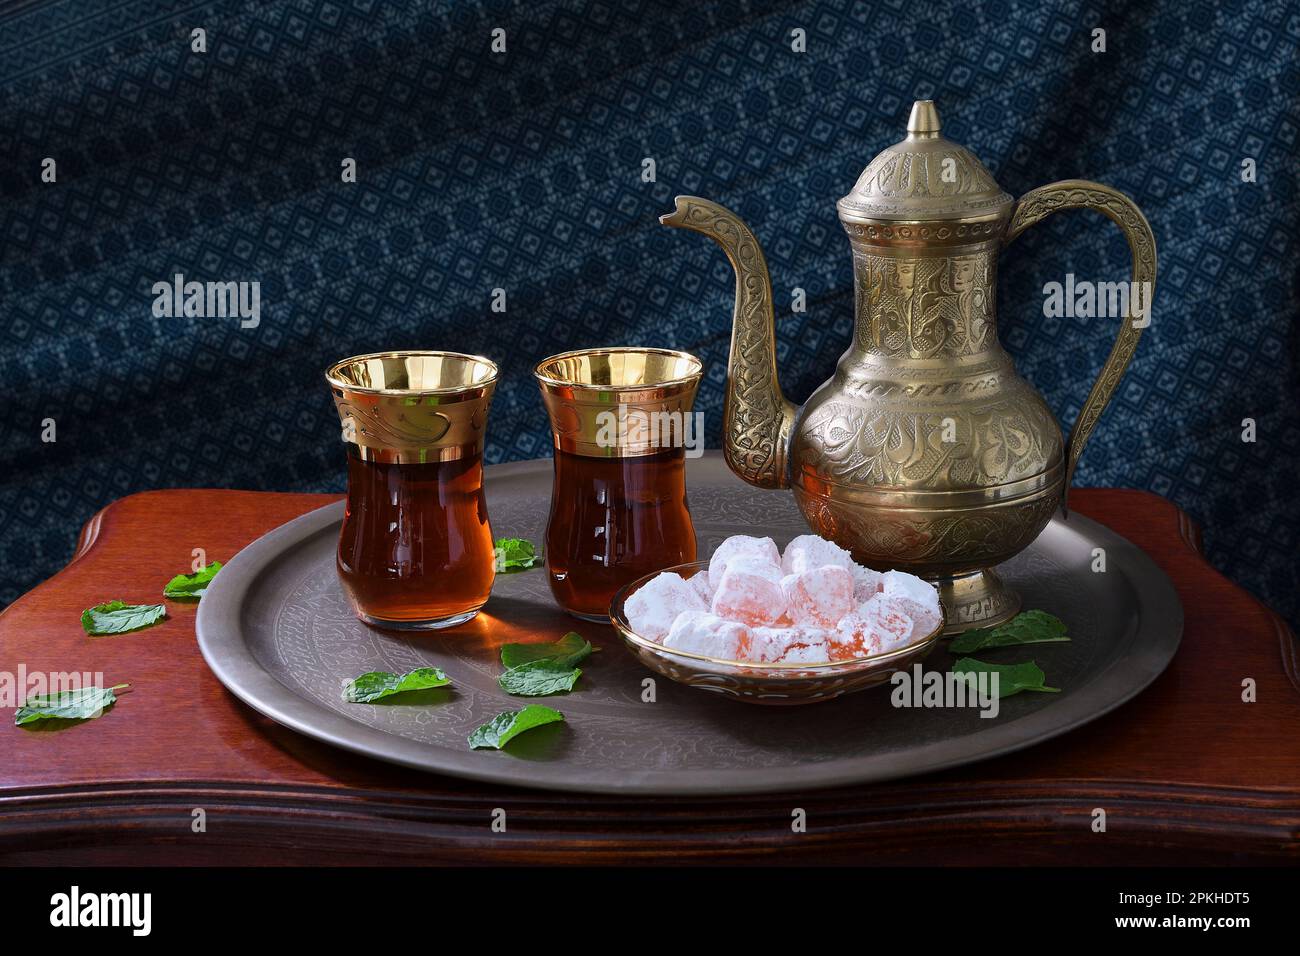 Eine klassische, feierliche, kunstvoll verzierte türkische Teekanne, zwei Gläser und traditionelle türkische Köstlichkeiten auf einem Tablett und einem Holztisch in sanfter stimmungsvoller Beleuchtung Stockfoto